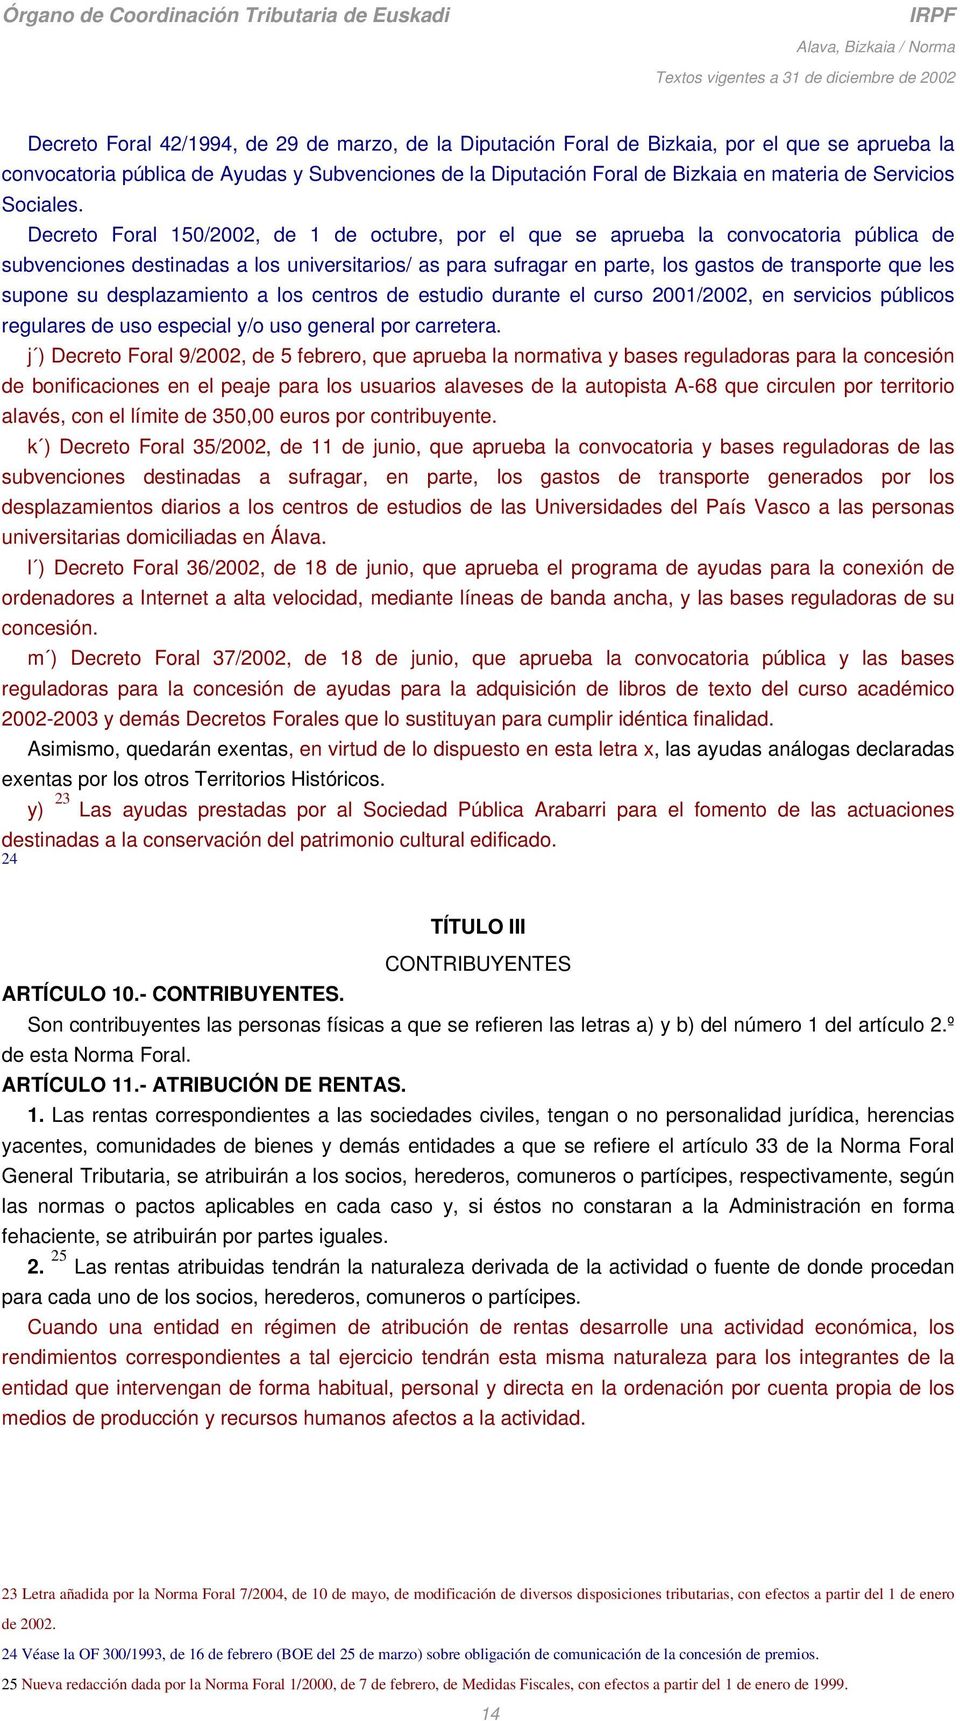 Decreto Foral 150/2002, de 1 de octubre, por el que se aprueba la convocatoria pública de subvenciones destinadas a los universitarios/ as para sufragar en parte, los gastos de transporte que les